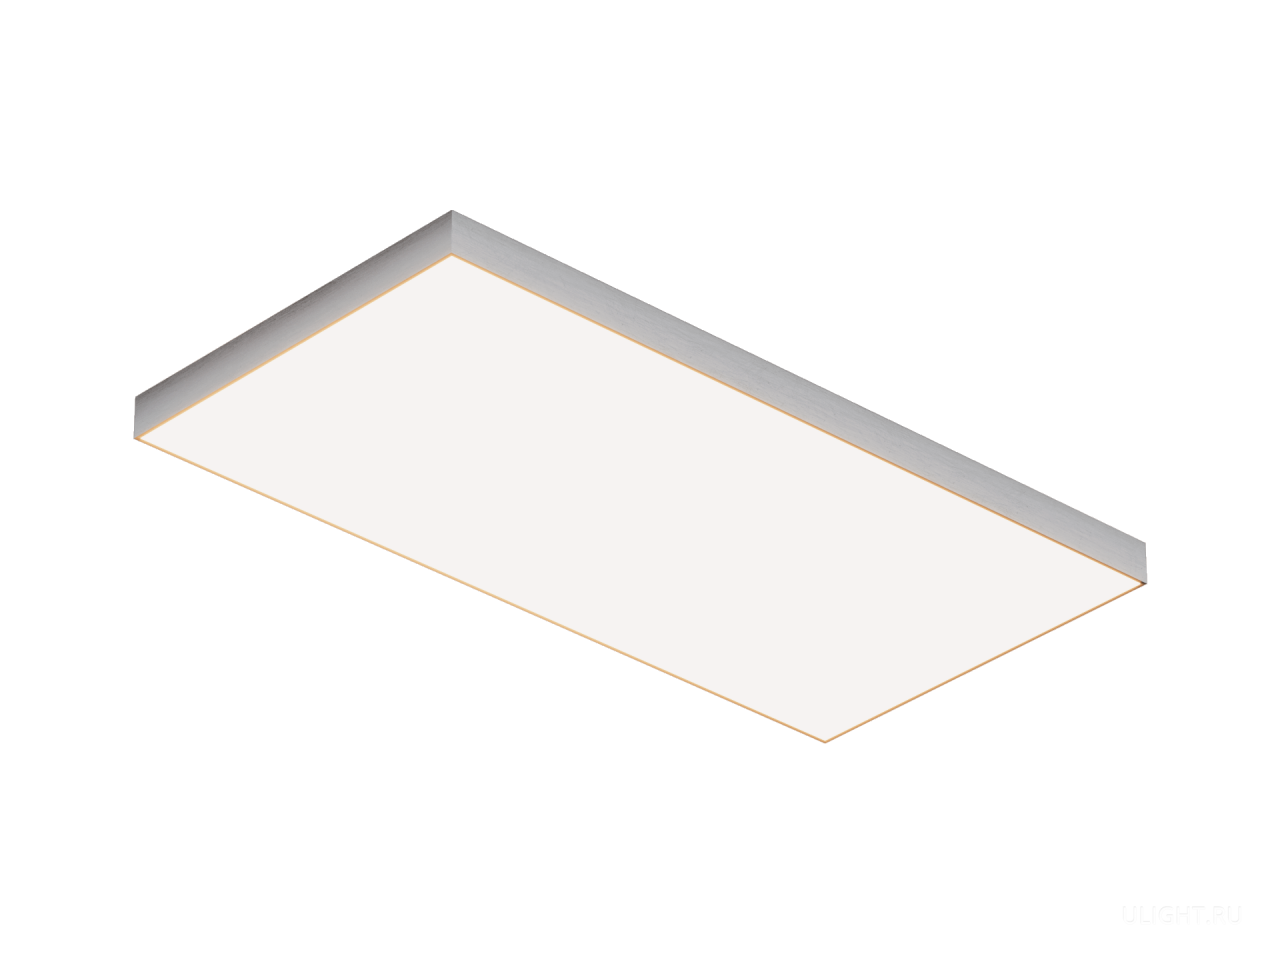 Серия функциональных крупногабаритных светодиодных светильников квадратной и прямоугольный формы с равномерно светящейся поверхностью PL13.